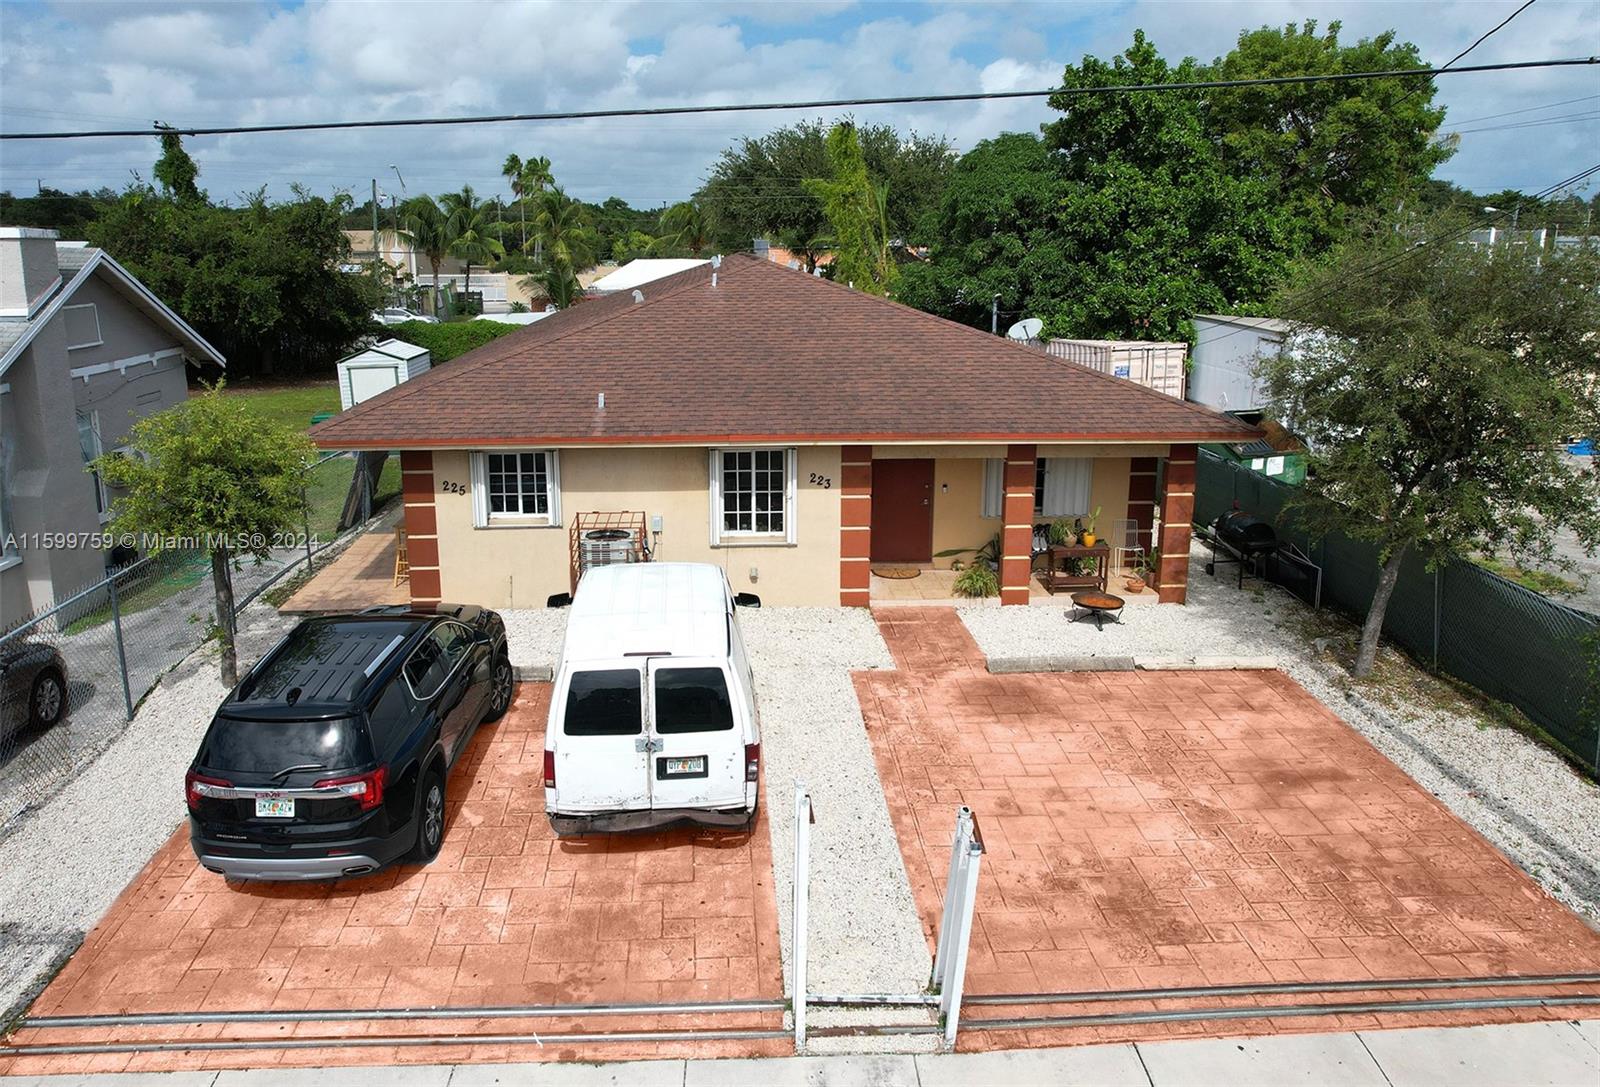 Rental Property at 225 Nw 53rd St, Miami, Broward County, Florida -  - $1,100,000 MO.